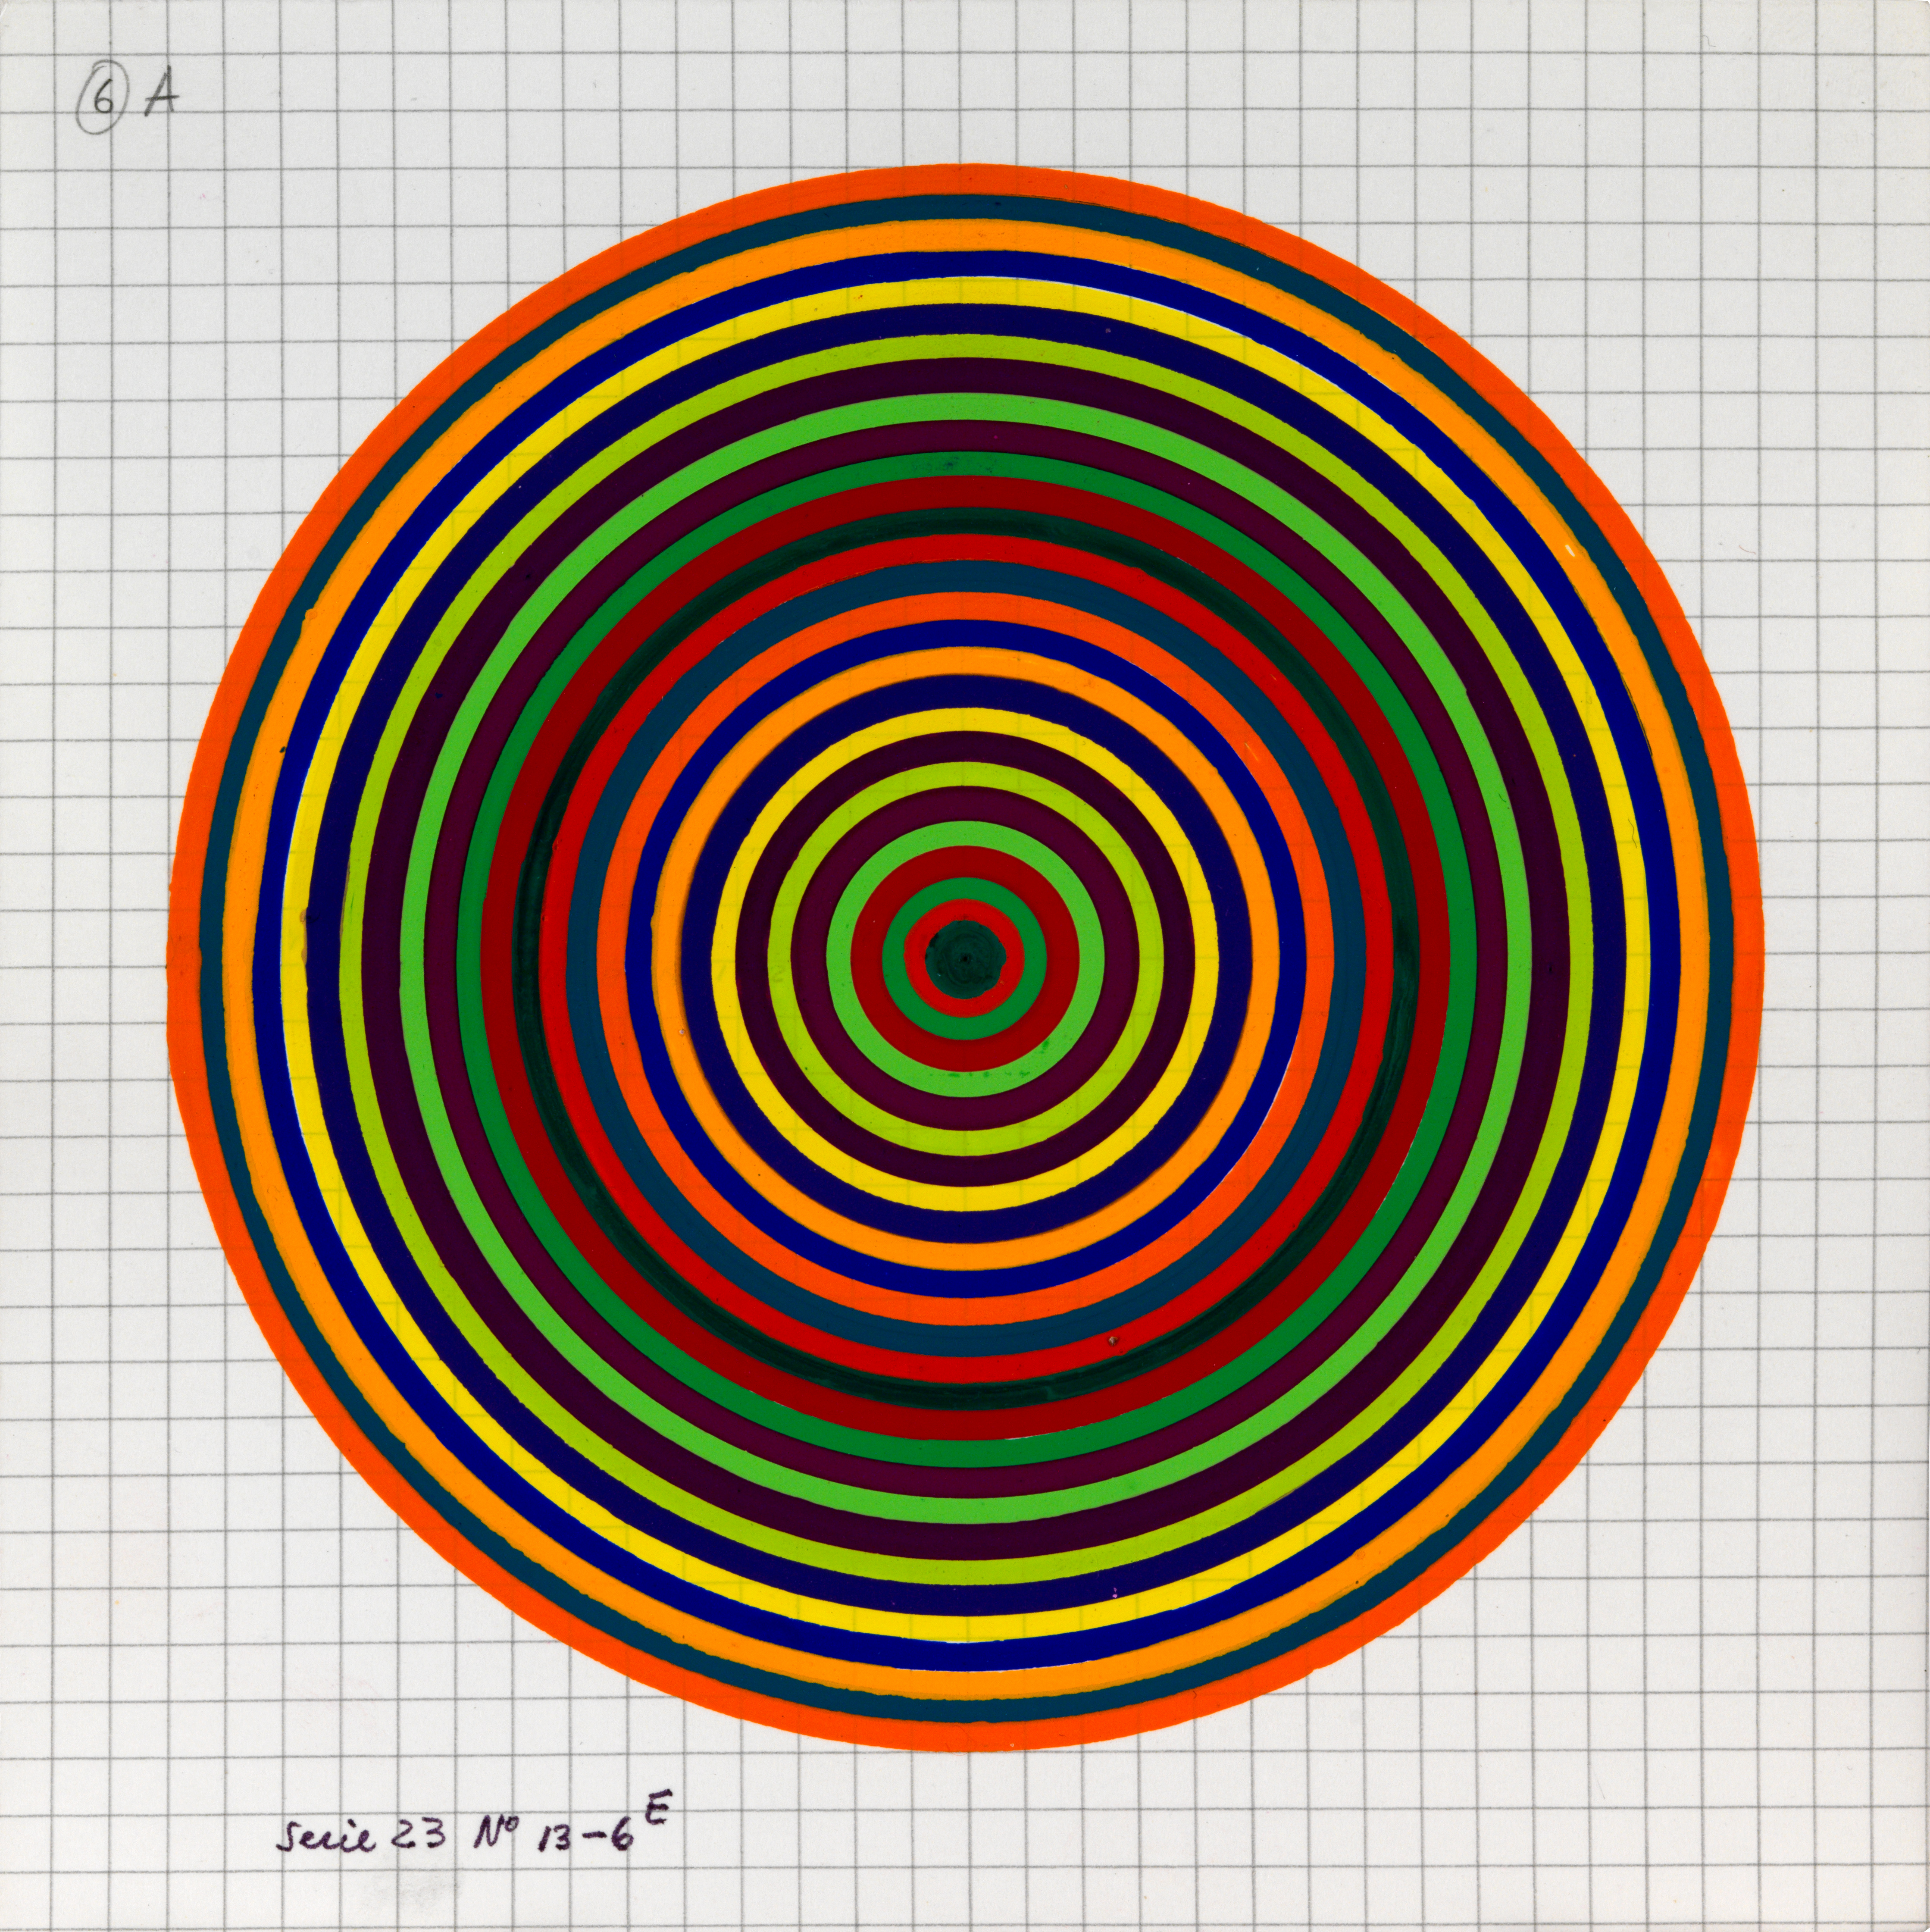 Julio Le Parc, Surface couleur, Cercles, série 23 n°13-6